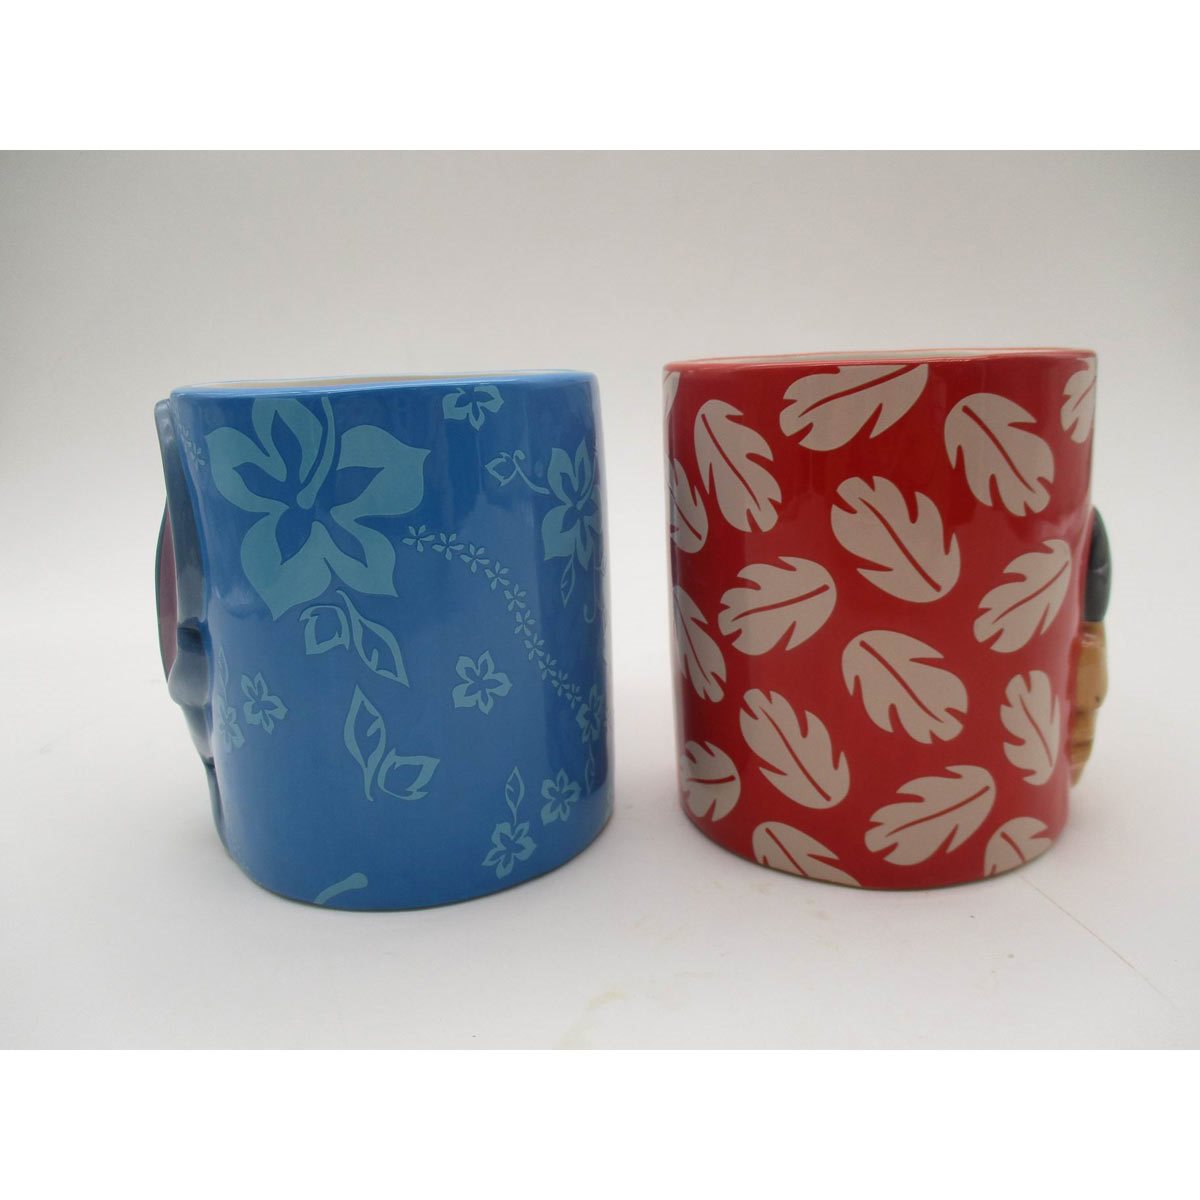 Disney Lilo & Stitch 3D Sculpted Ceramic Mug | Holds 20 Ounces